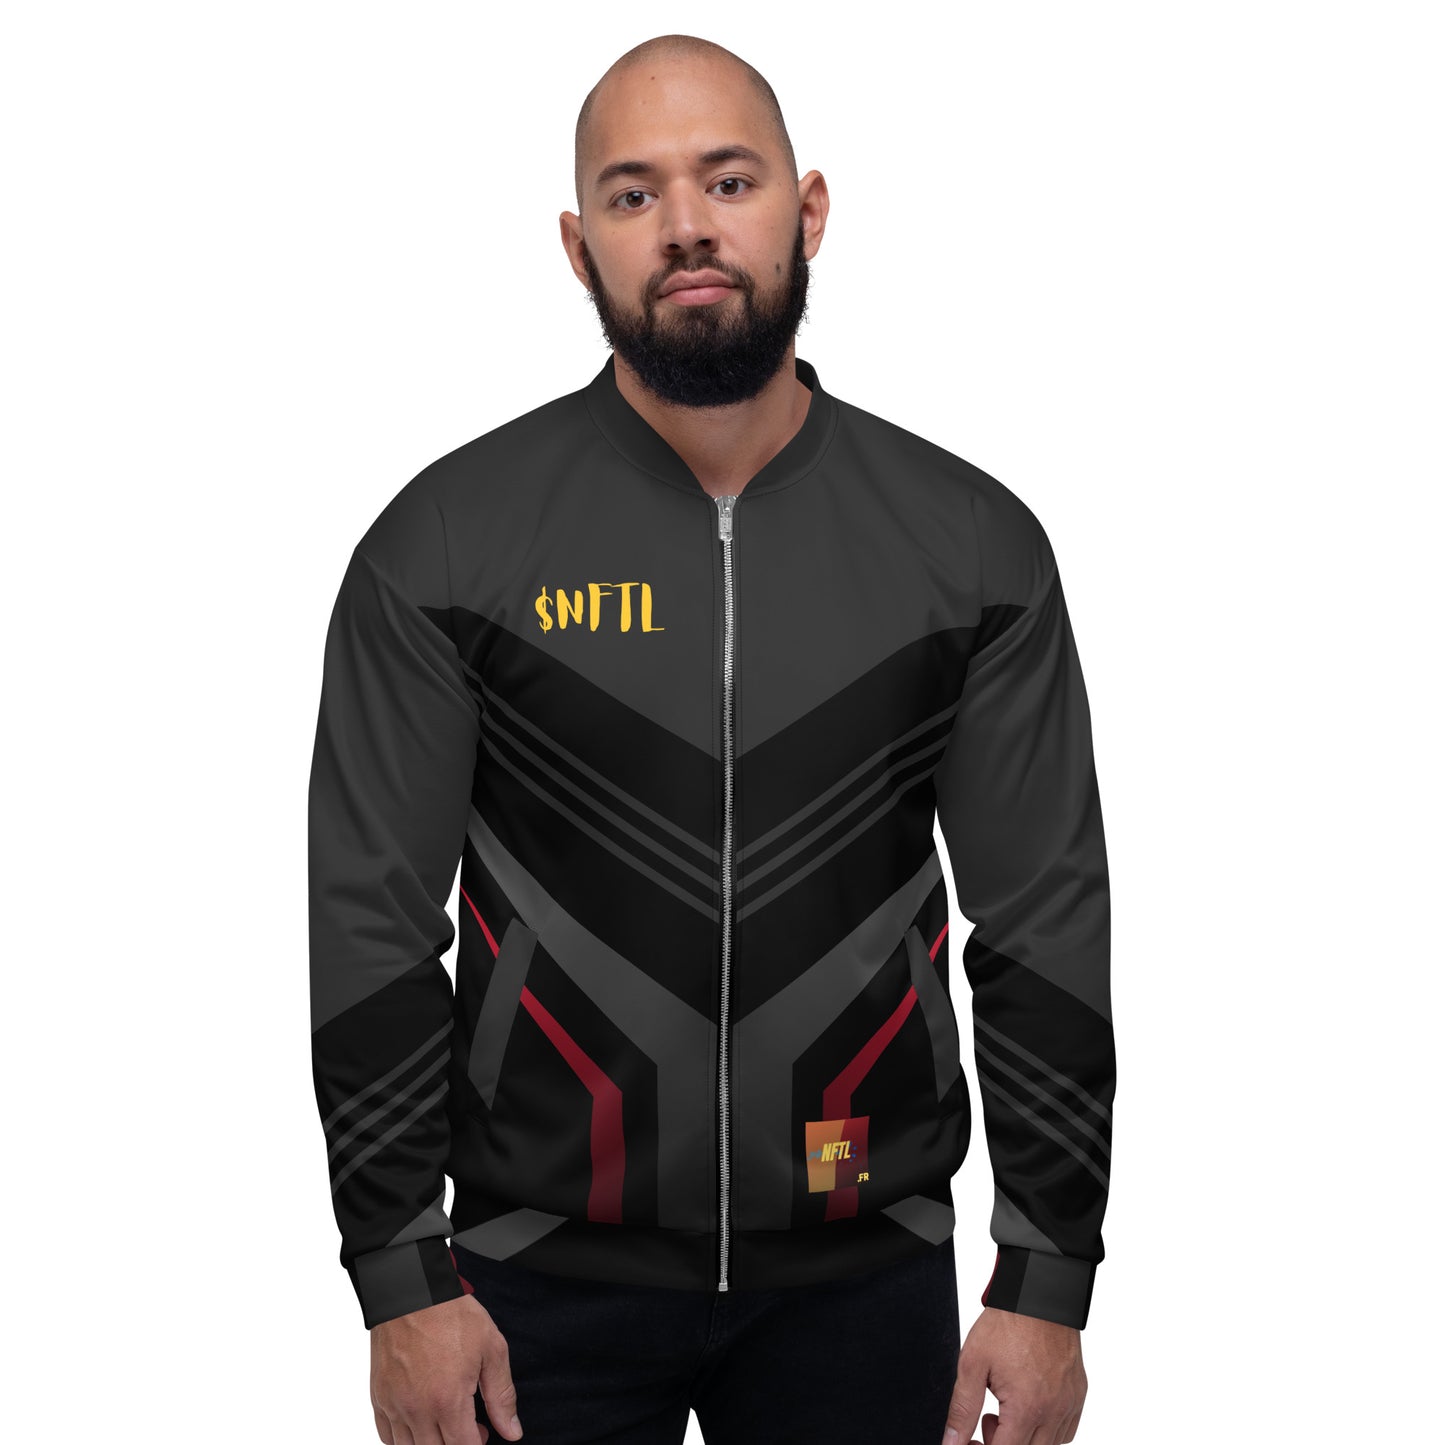 Unisex Spring Jacket $NFTL Limited Edition #5